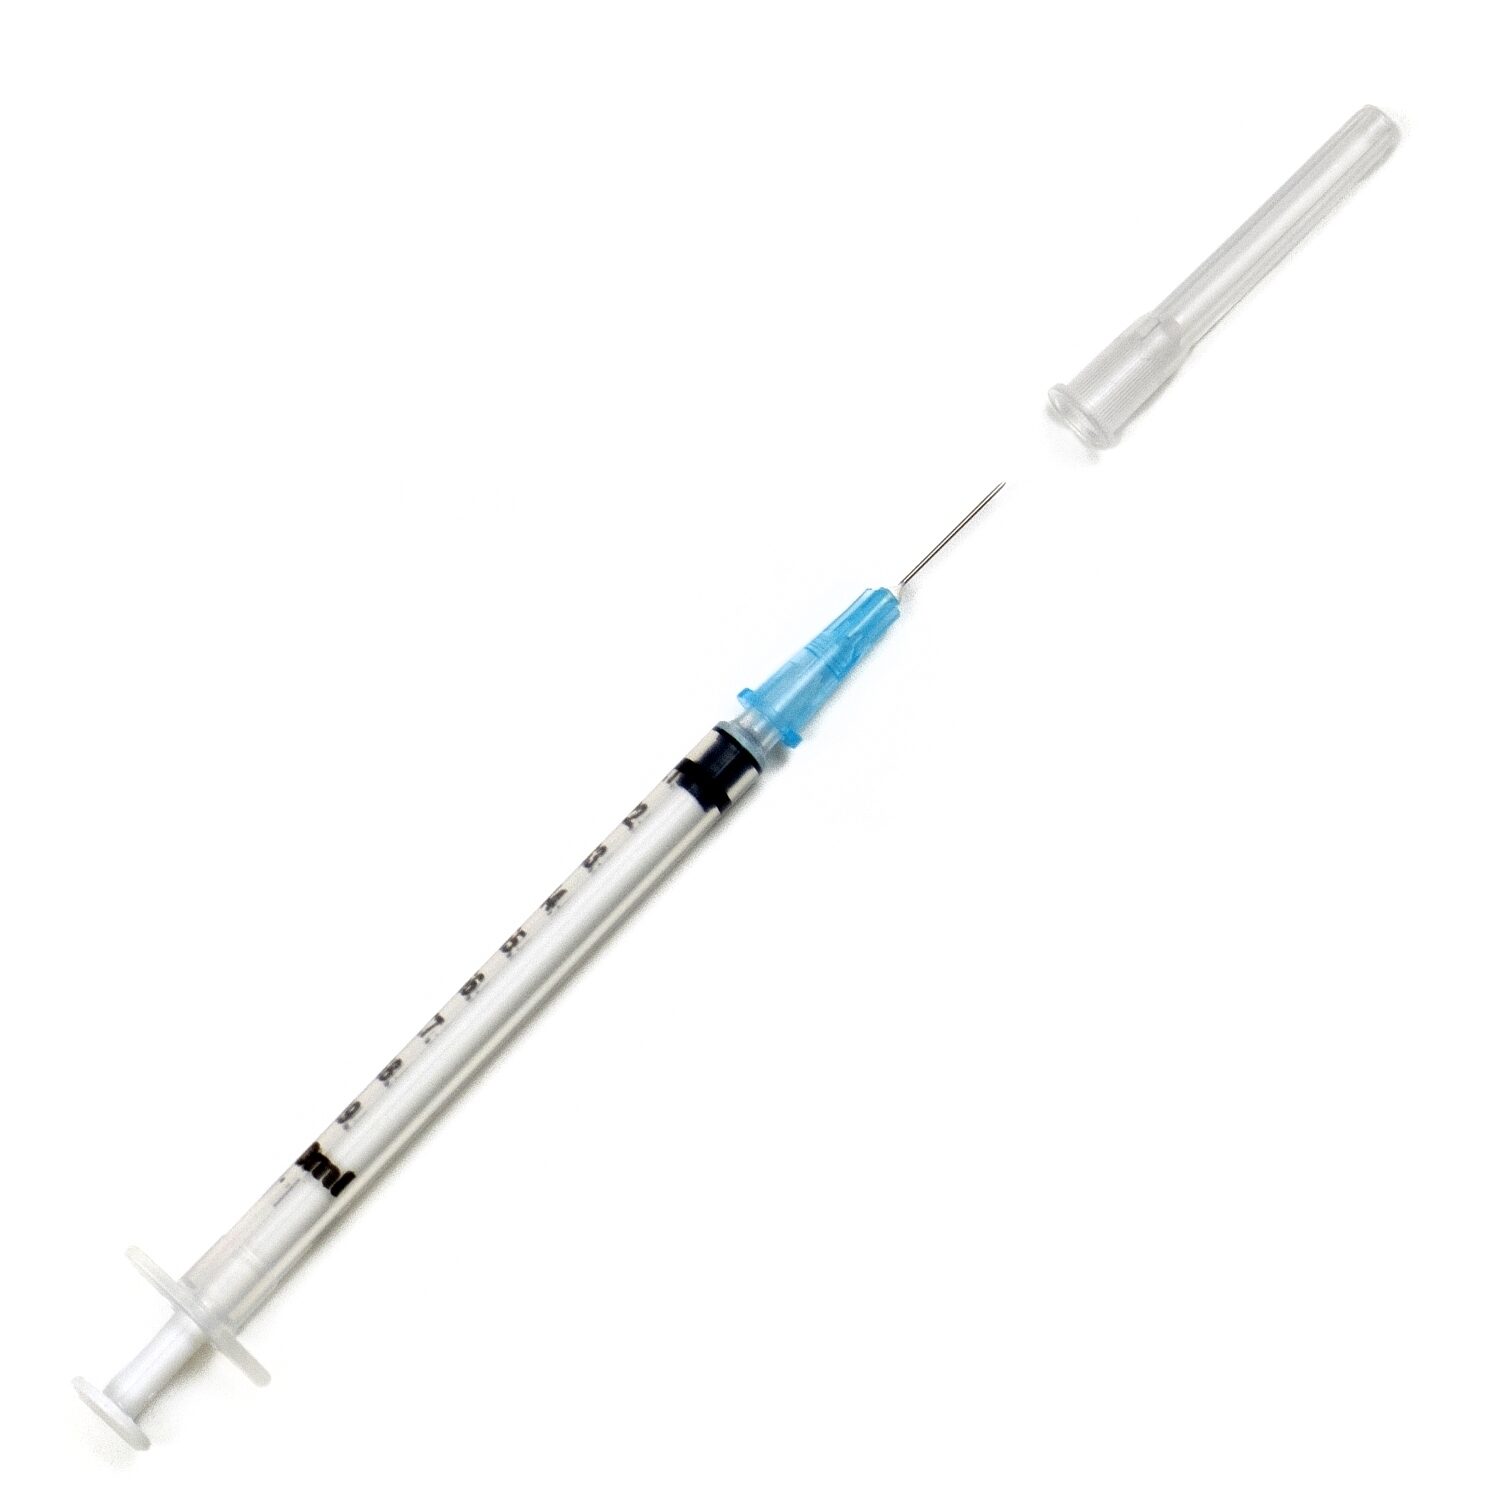 bd needle with syringe